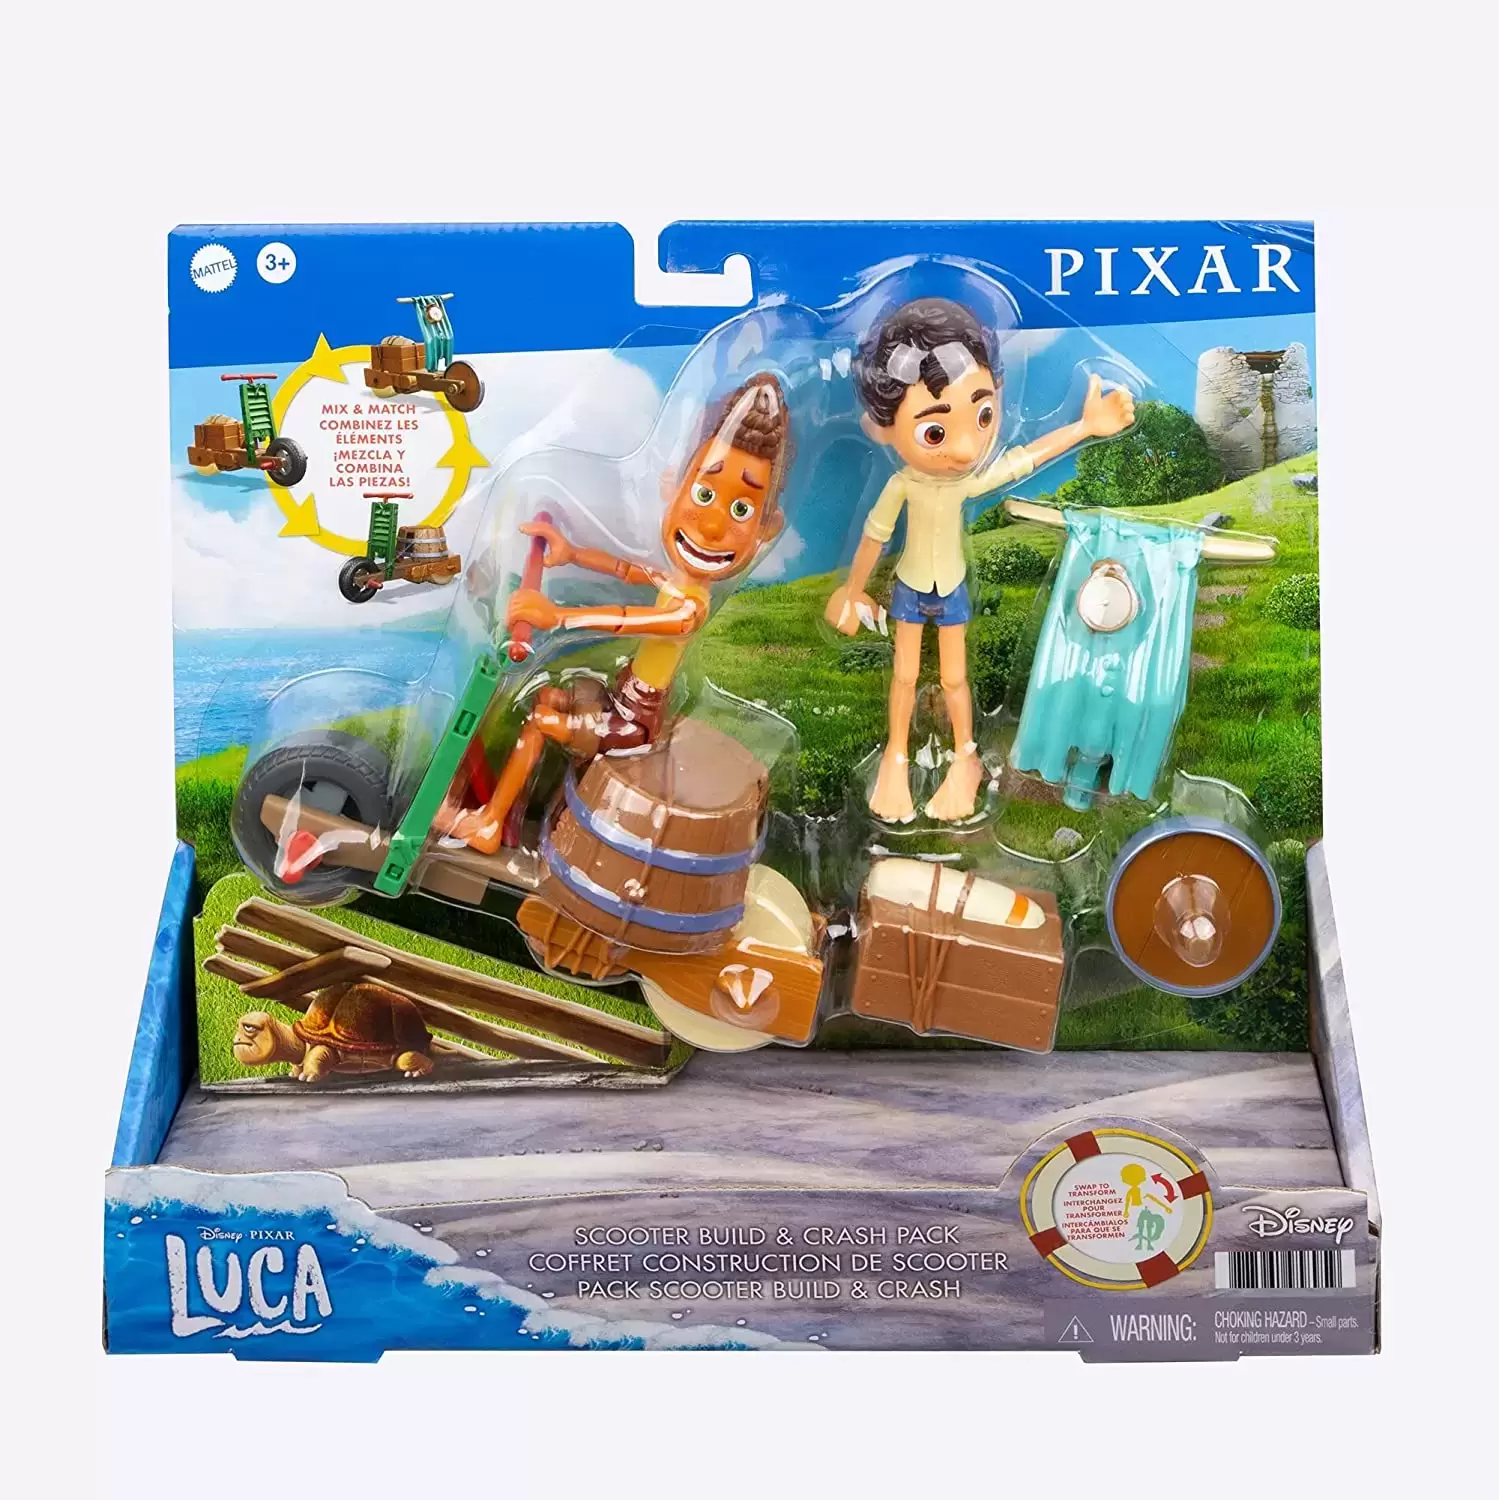 Pixar luca stargazers pack com luca paguro